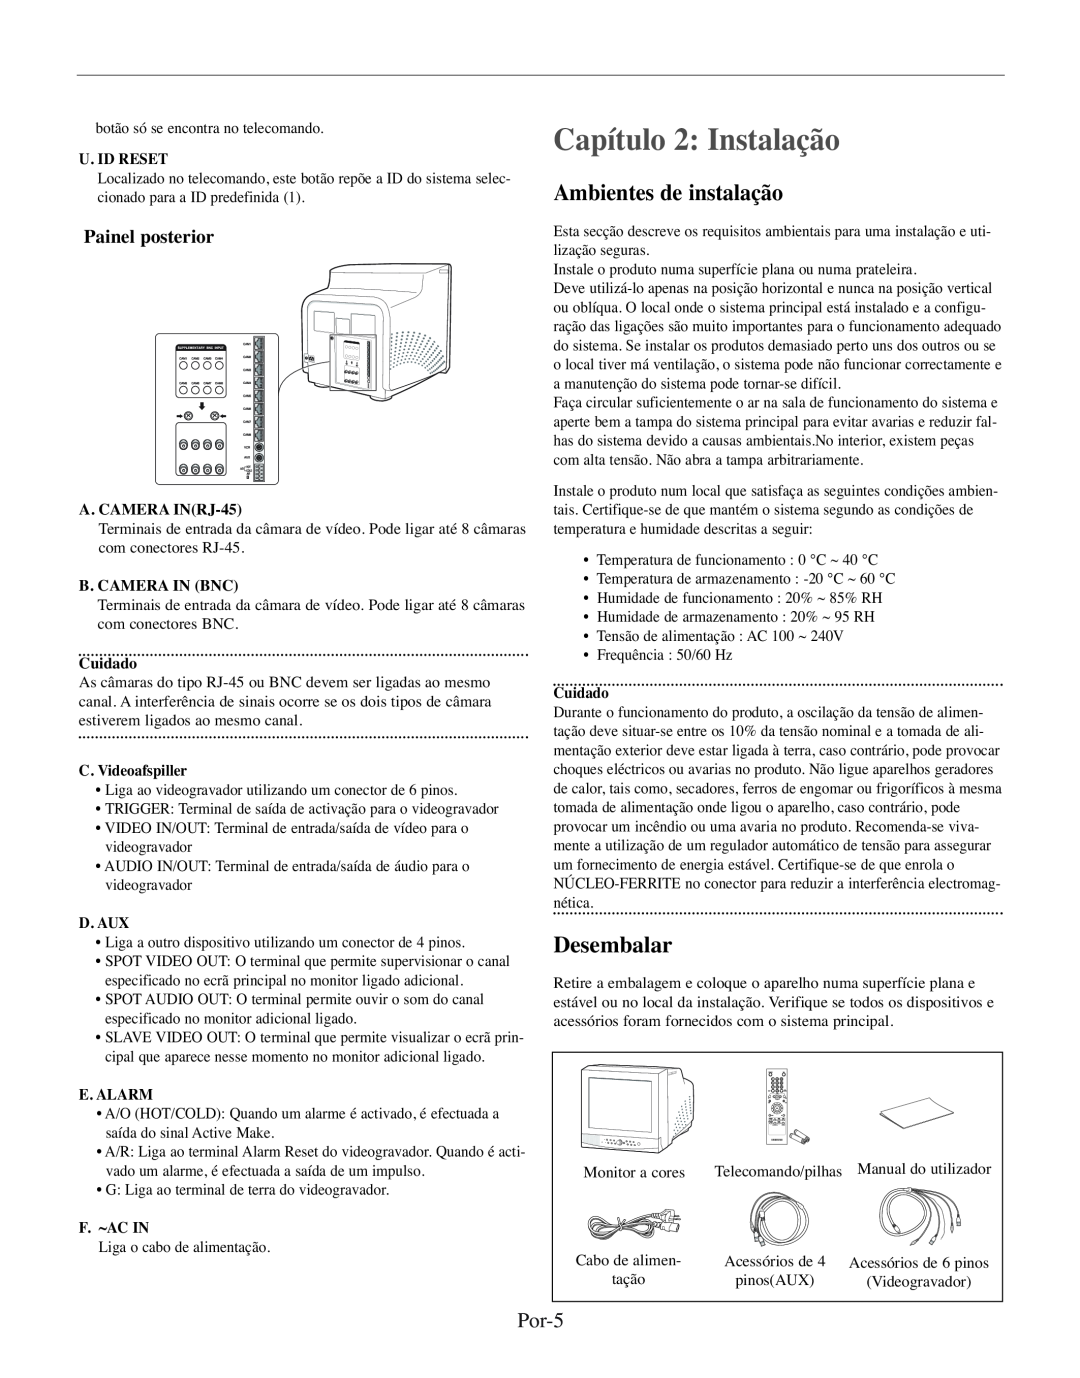 Samsung SMO-210TRP manual Capítulo 2 Instalação, Ambientes de instalação, Desembalar, Por-5, Painel posterior, U. Id Reset 